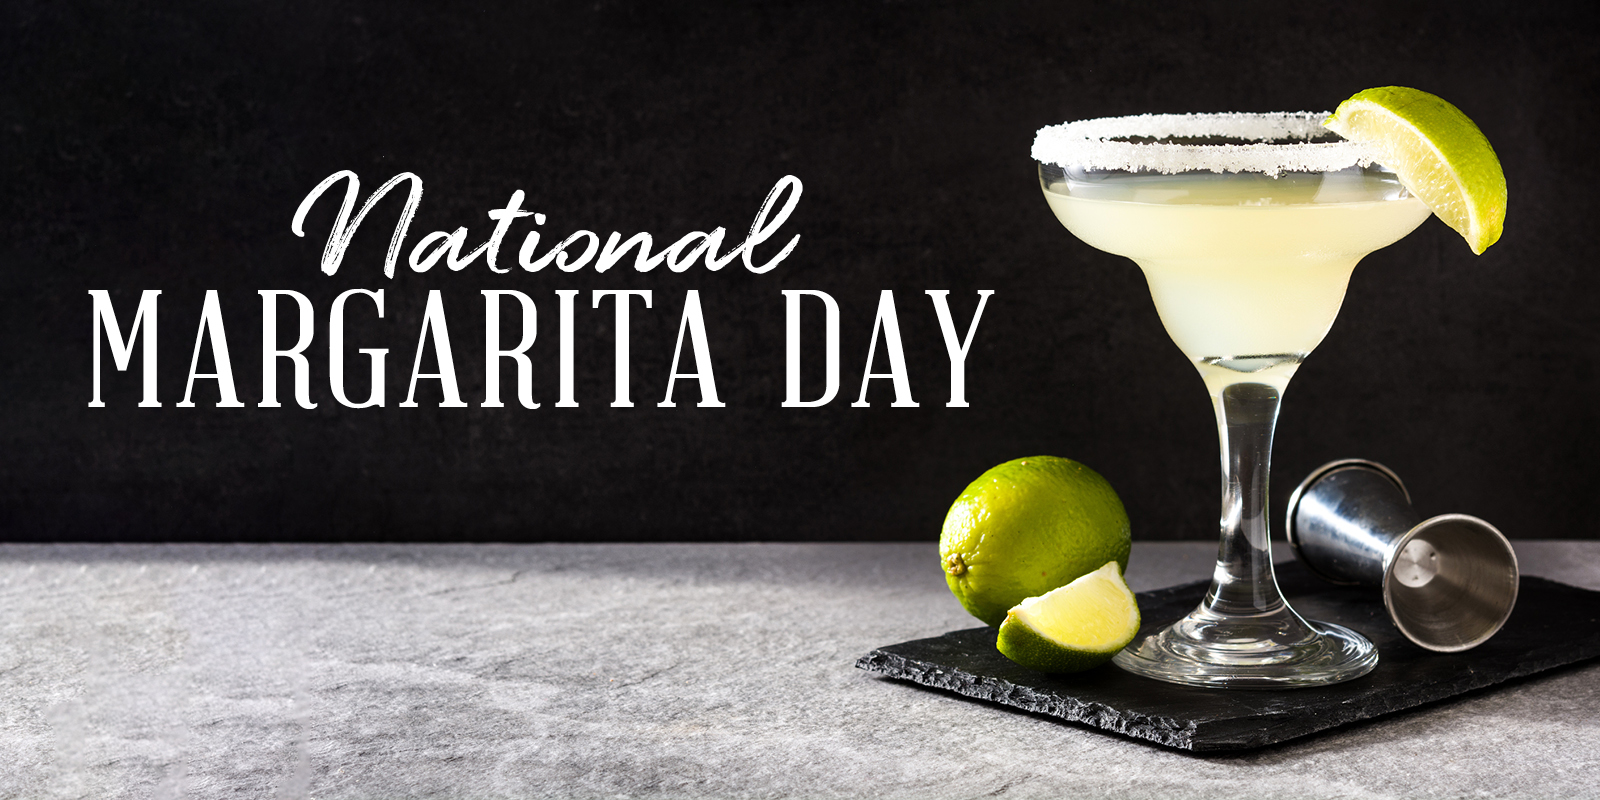 Ein Hoch auf den Nationalen Margarita-Tag!